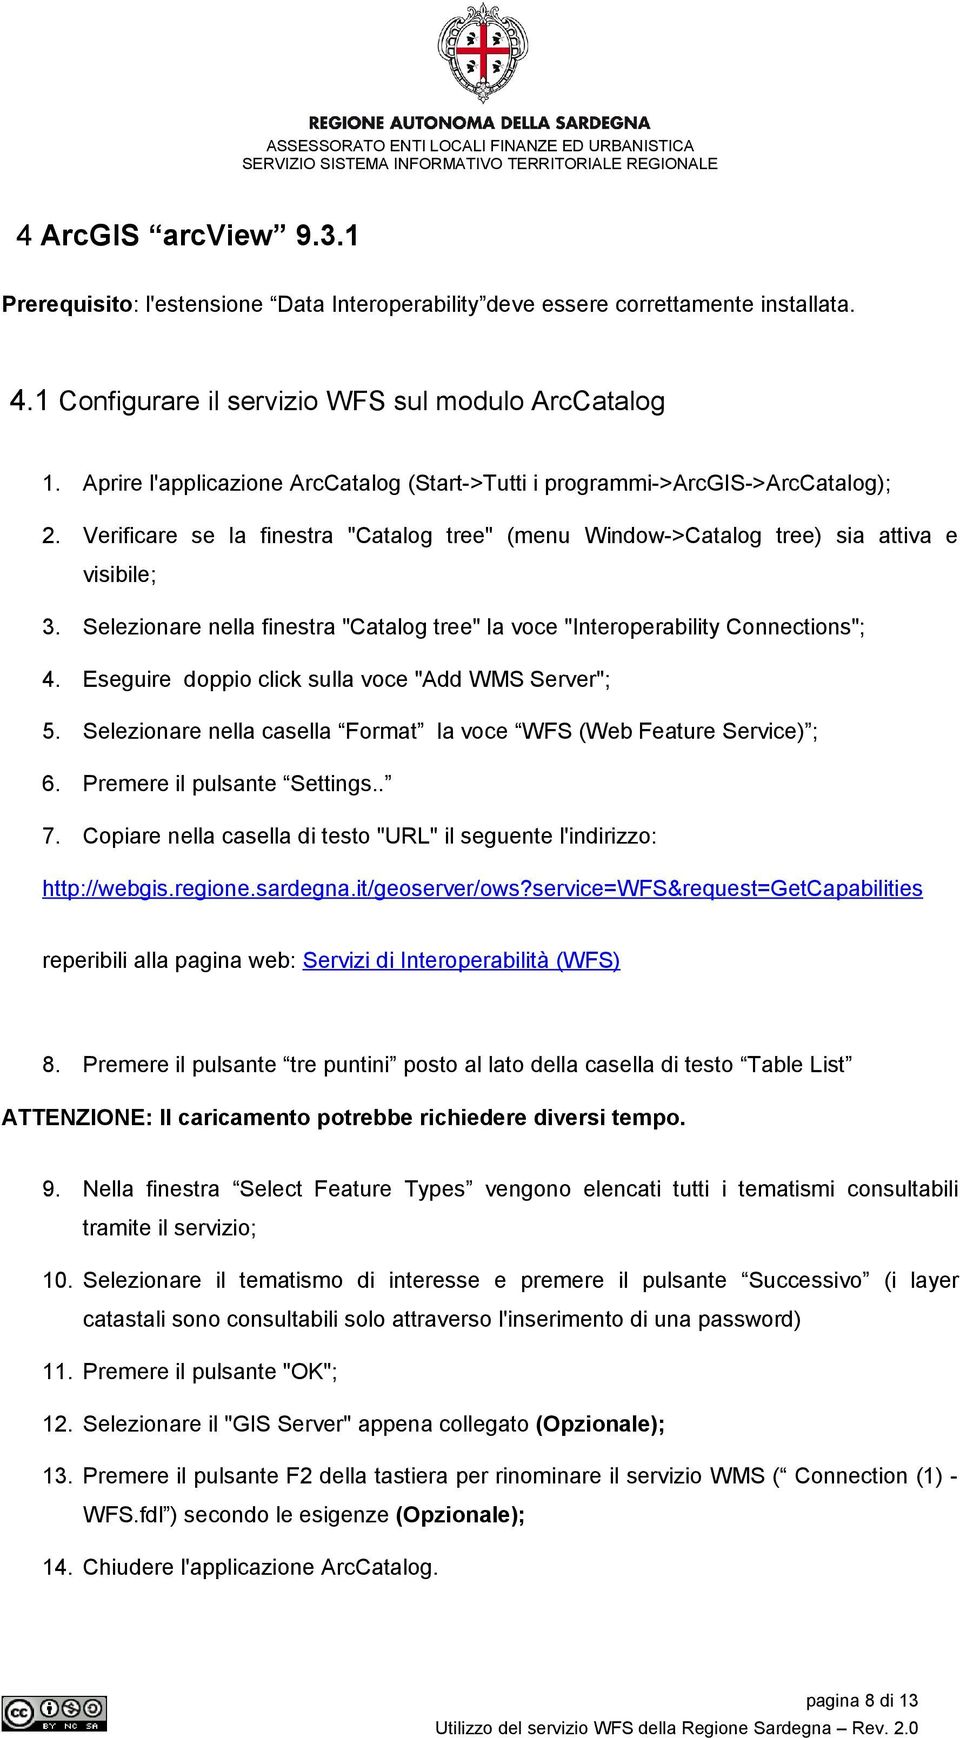 Selezionare nella finestra "Catalog tree" la voce "Interoperability Connections"; 4. Eseguire doppio click sulla voce "Add WMS Server"; 5.